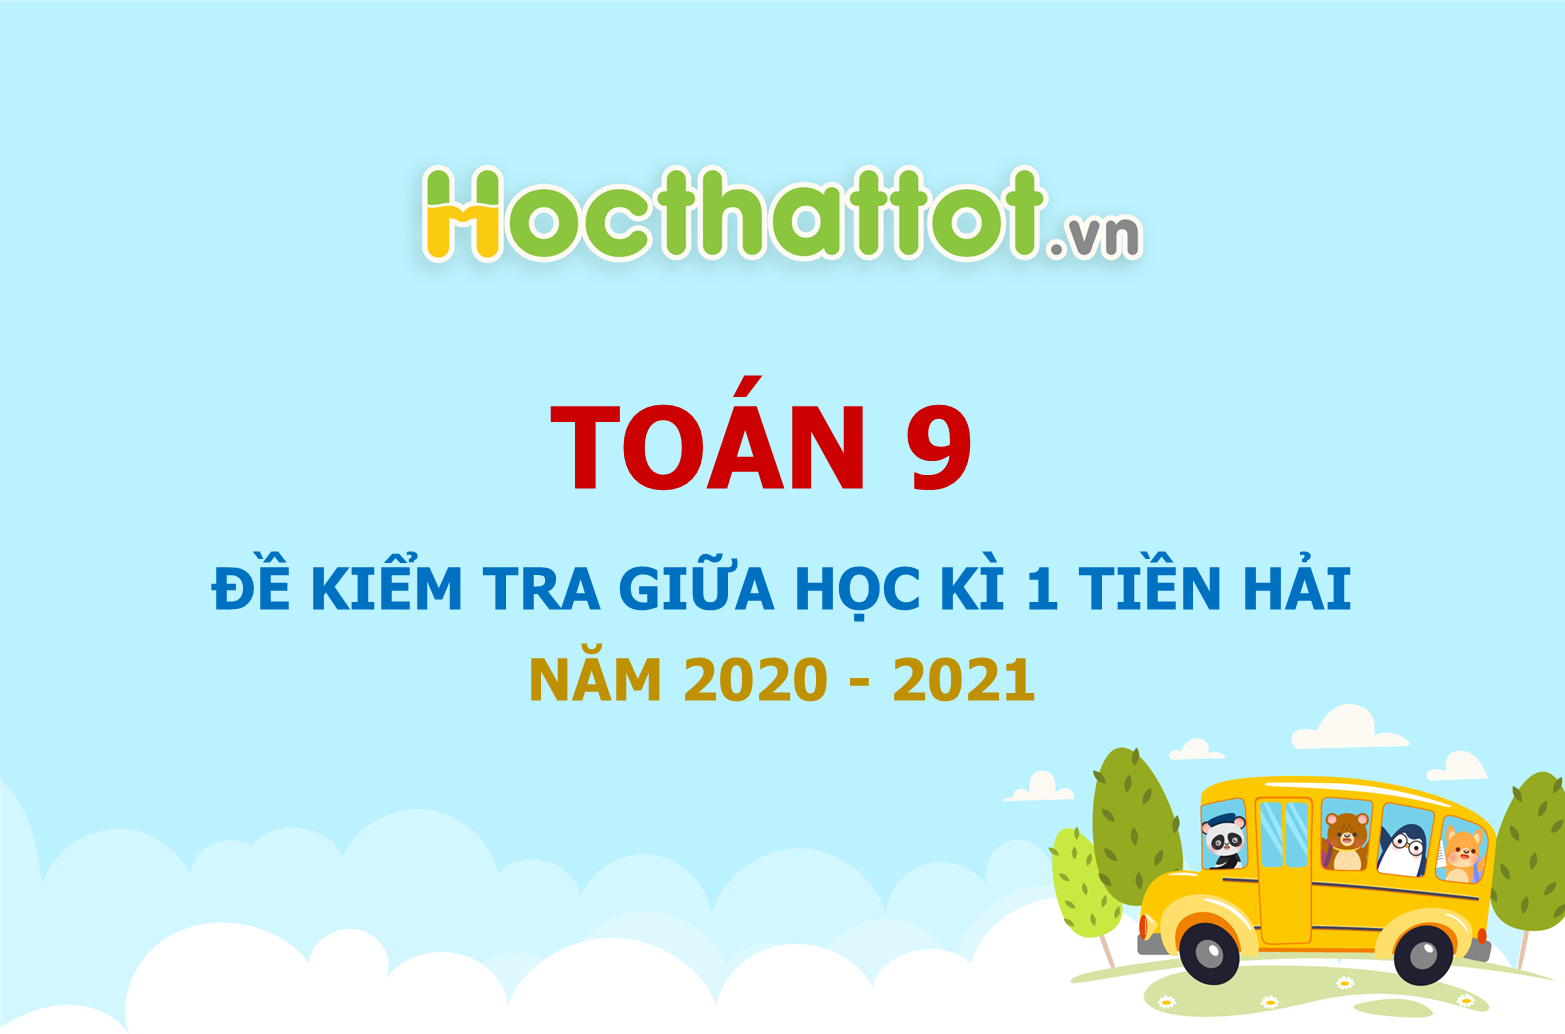 de-kiem-tra-giua-hoc-ki-1-lop-9-phong-gd&dt-tien-hai-nam-2020-2021